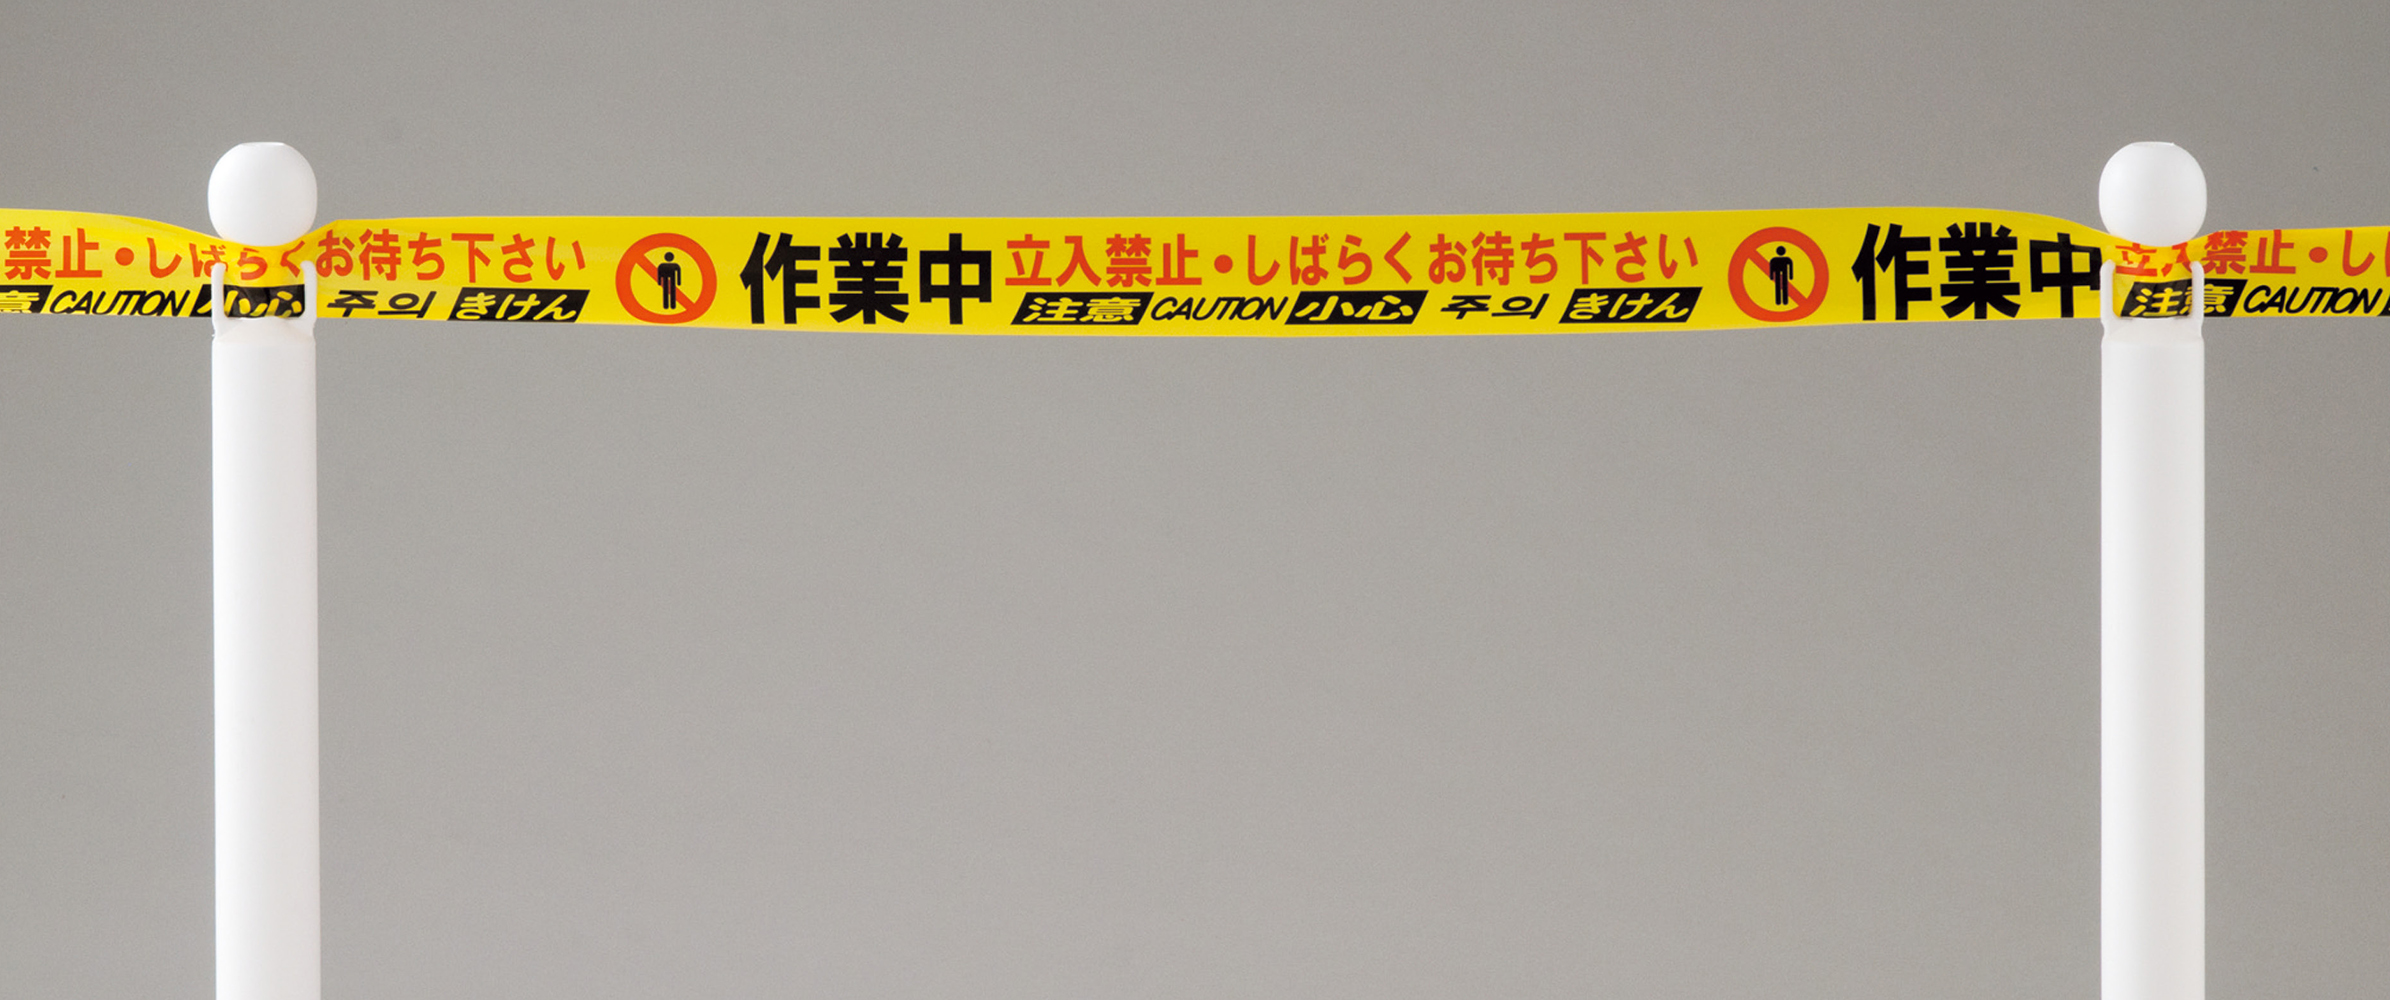 四カ国語対応バリケードテープ(日本語・英語・中国語・韓国語) 147017 BT-75UP,（安全標識・安全用品 日本緑十字社）,の通販  詳細情報,電設資材・電線・ケーブル・安全用品 ネット通販 Watanabe 電設資材 電線 ケーブル ネット 通販 Watanabe